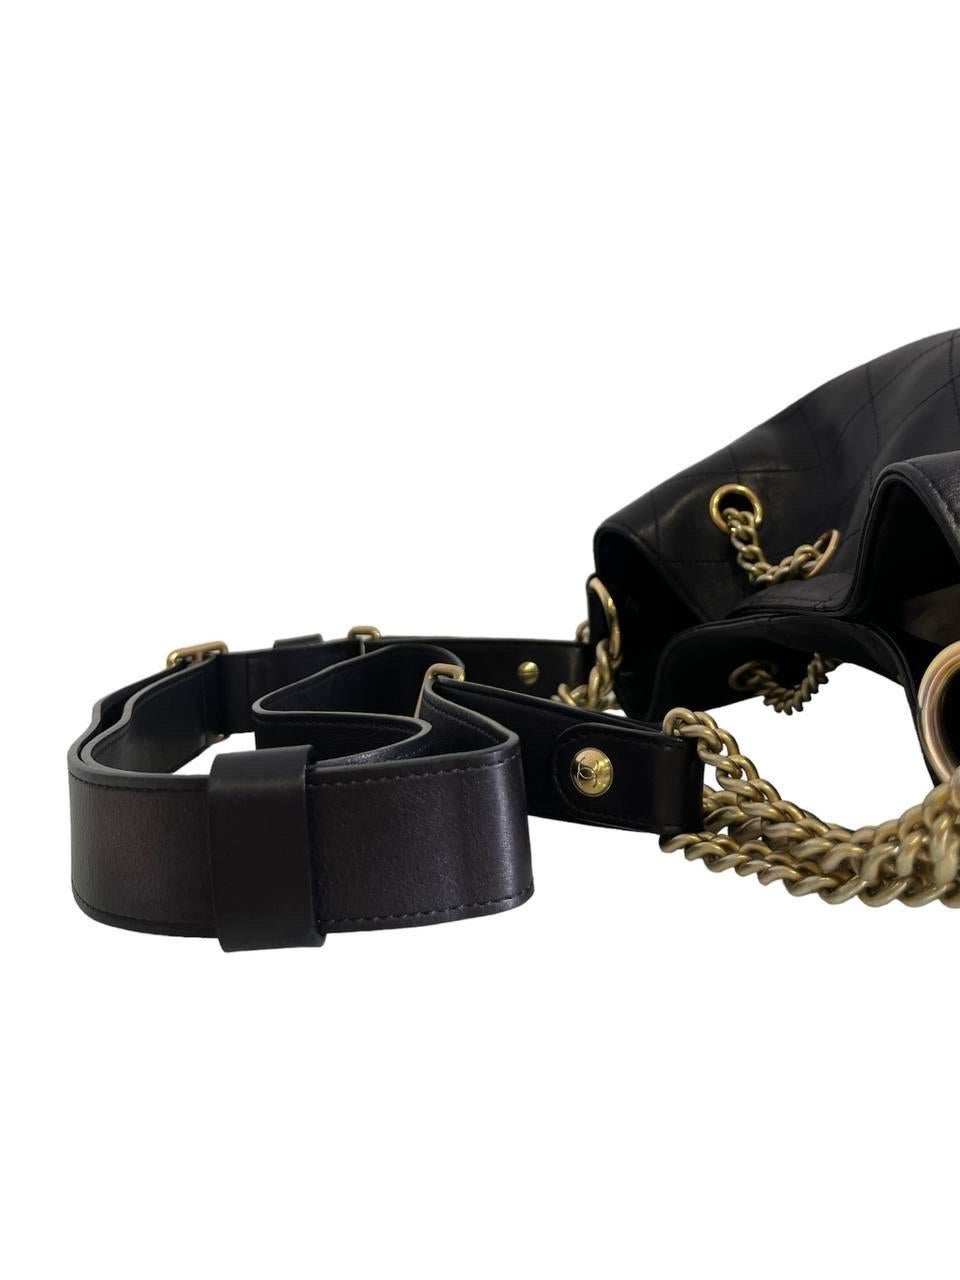 2016 Chanel Black Quilted Bucket Shoulder Bag For Sale 2